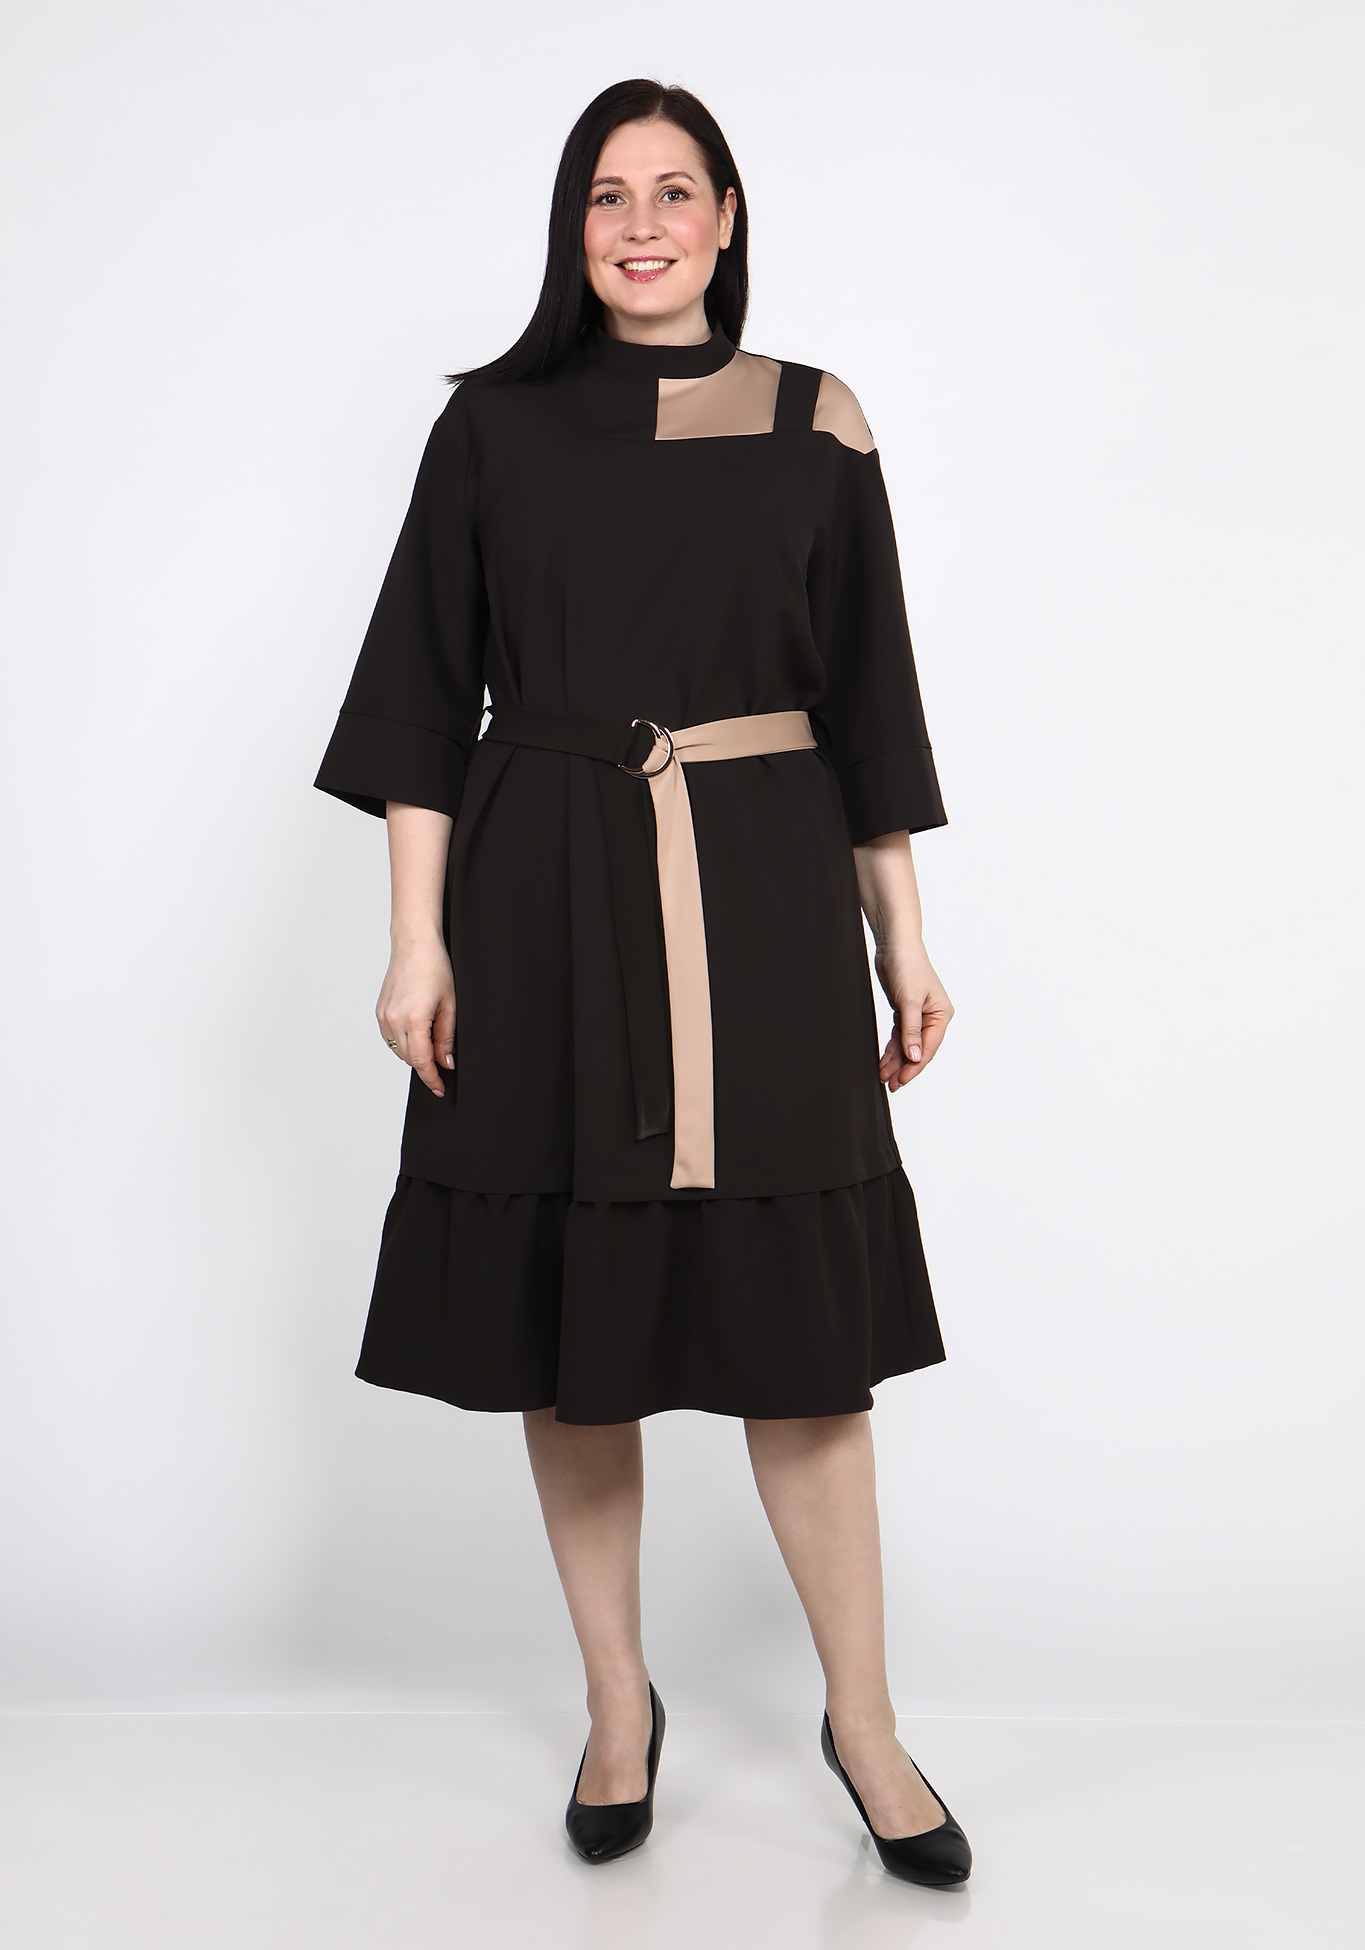 Платье свободного кроя с воланом GalaGrosso, размер 50, цвет темно-коричневый - фото 1